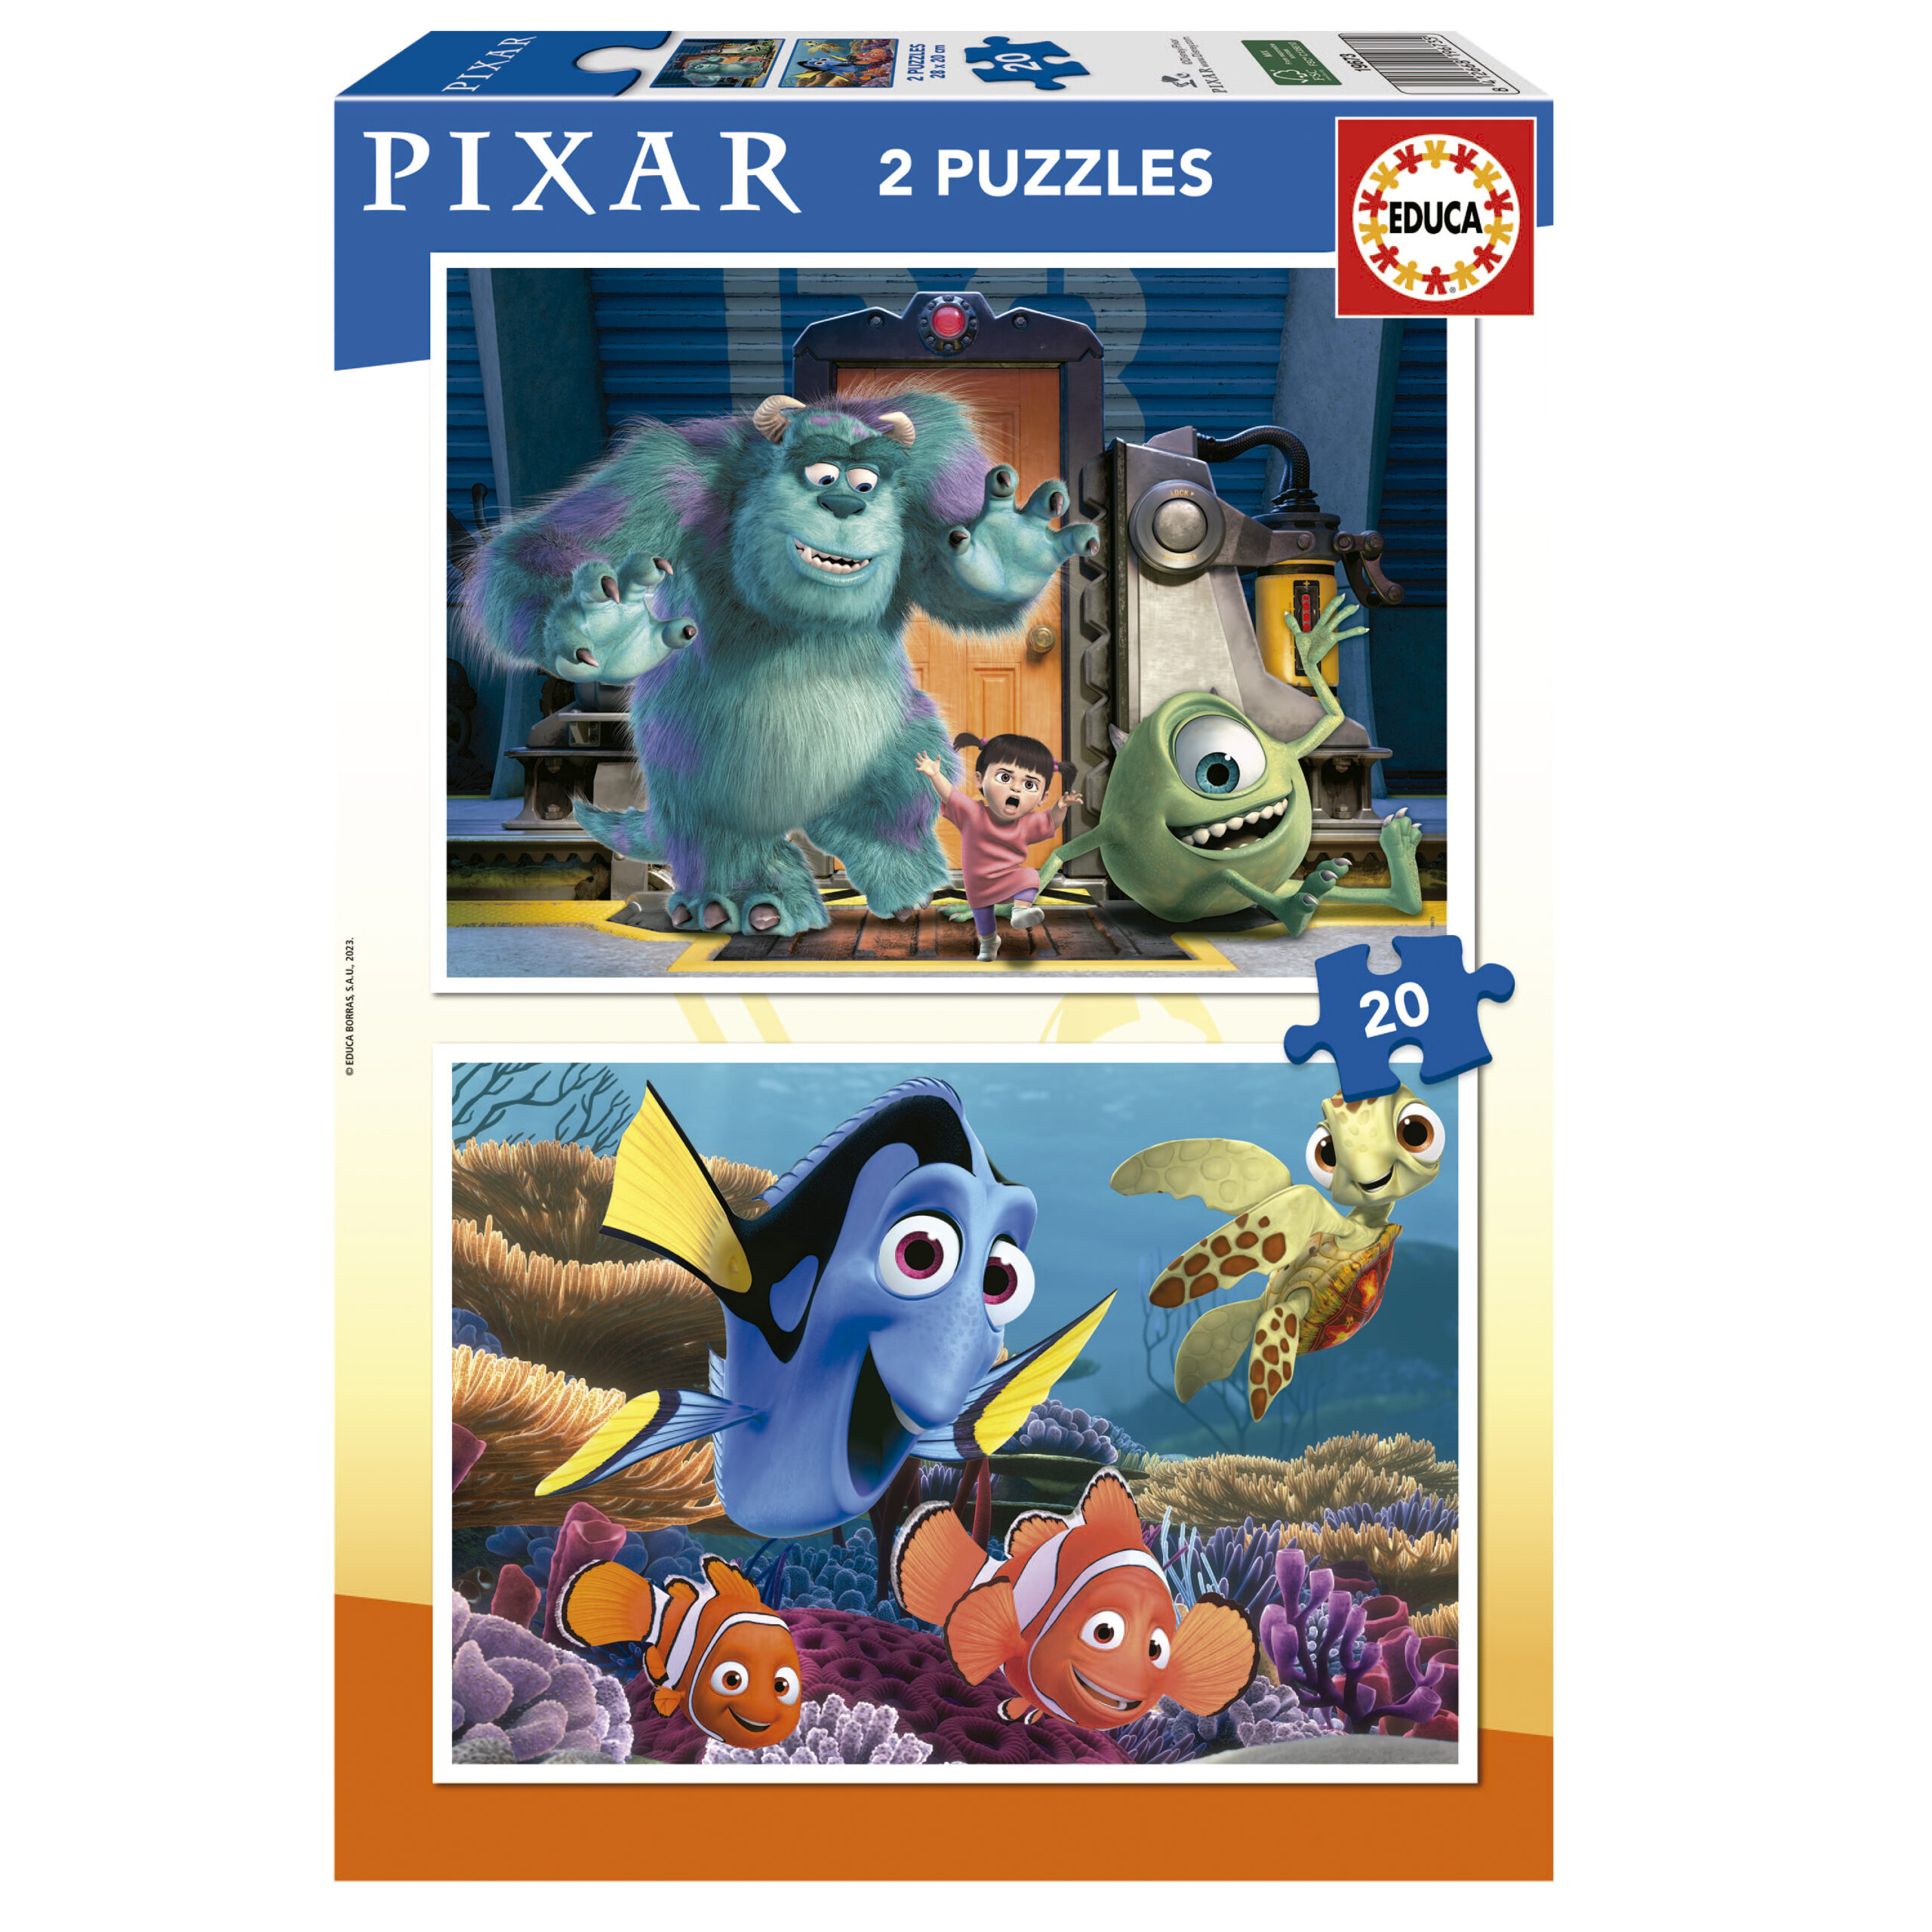 2x20 Disney Pixar (Finding Nemo + Monsters Inc.)